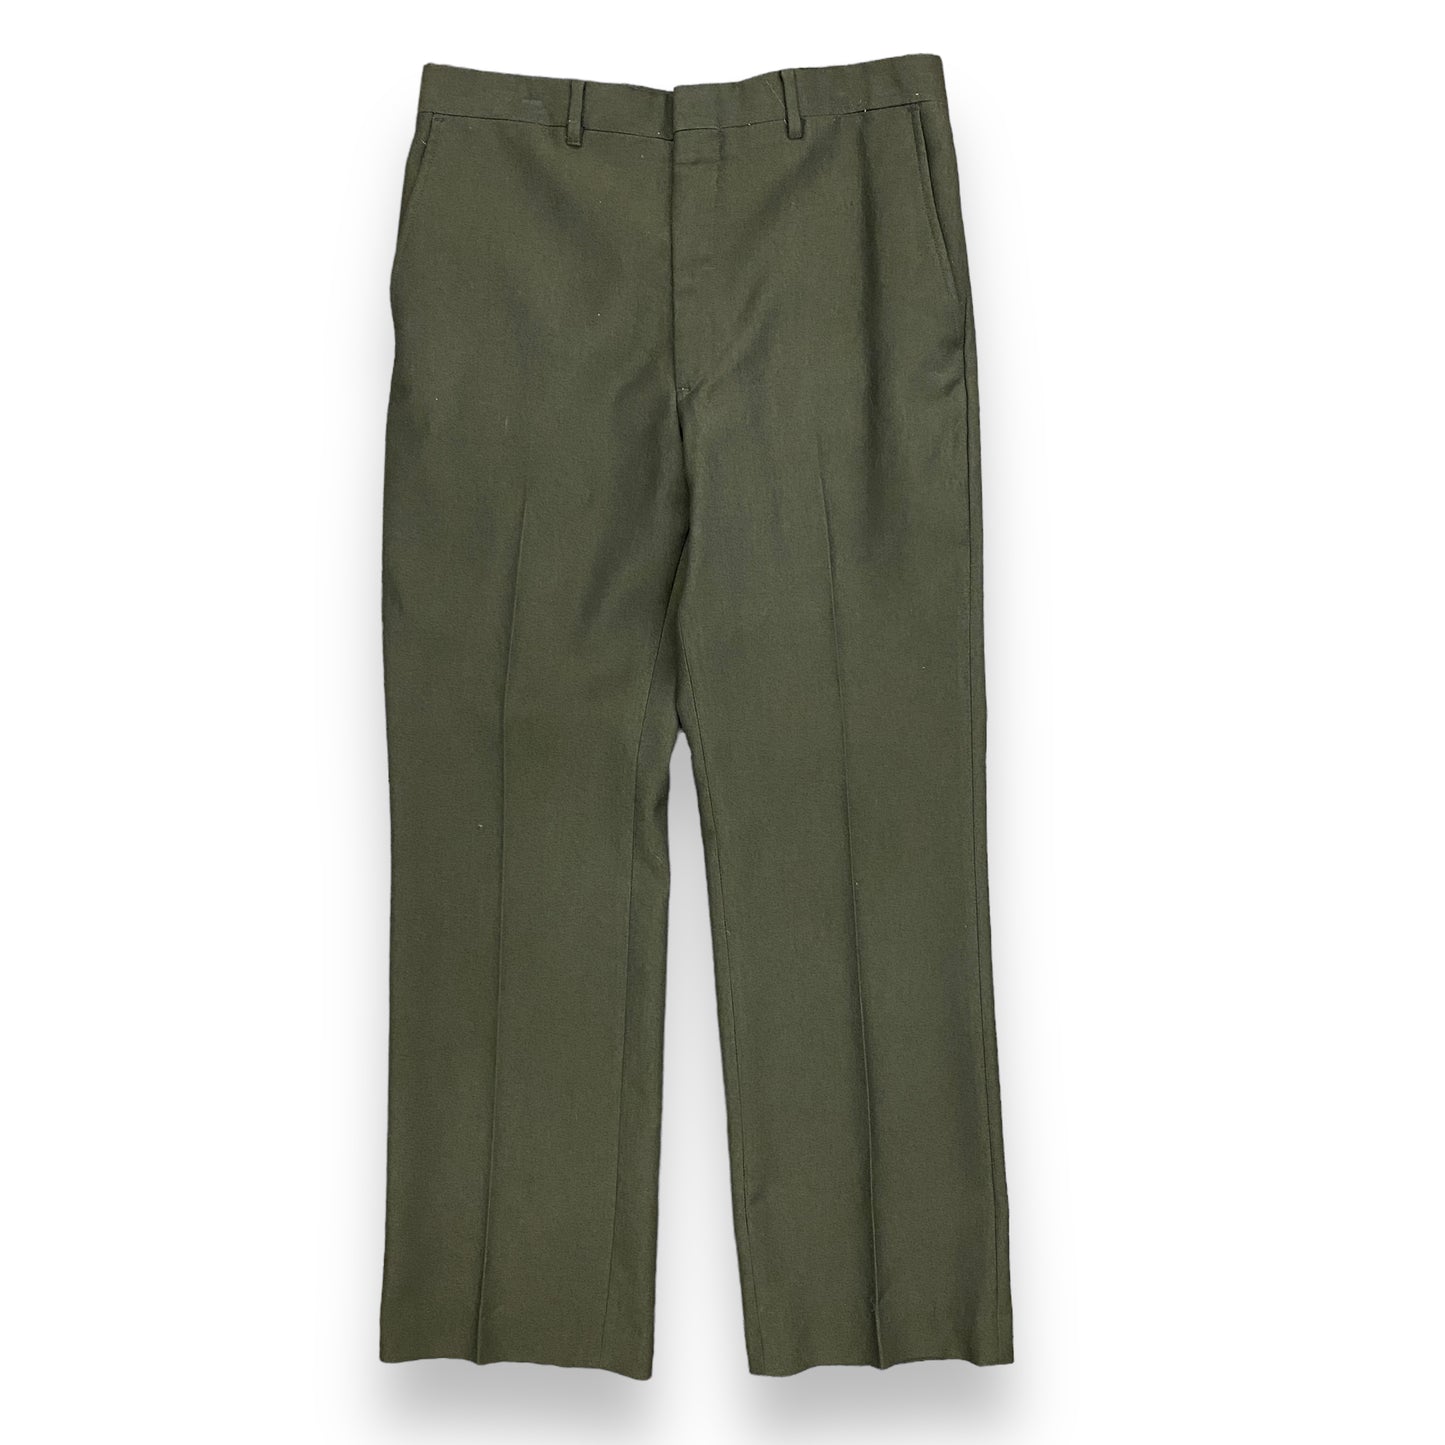 Vintage 1970s Dark Brown Wool Pants - 32"x30"